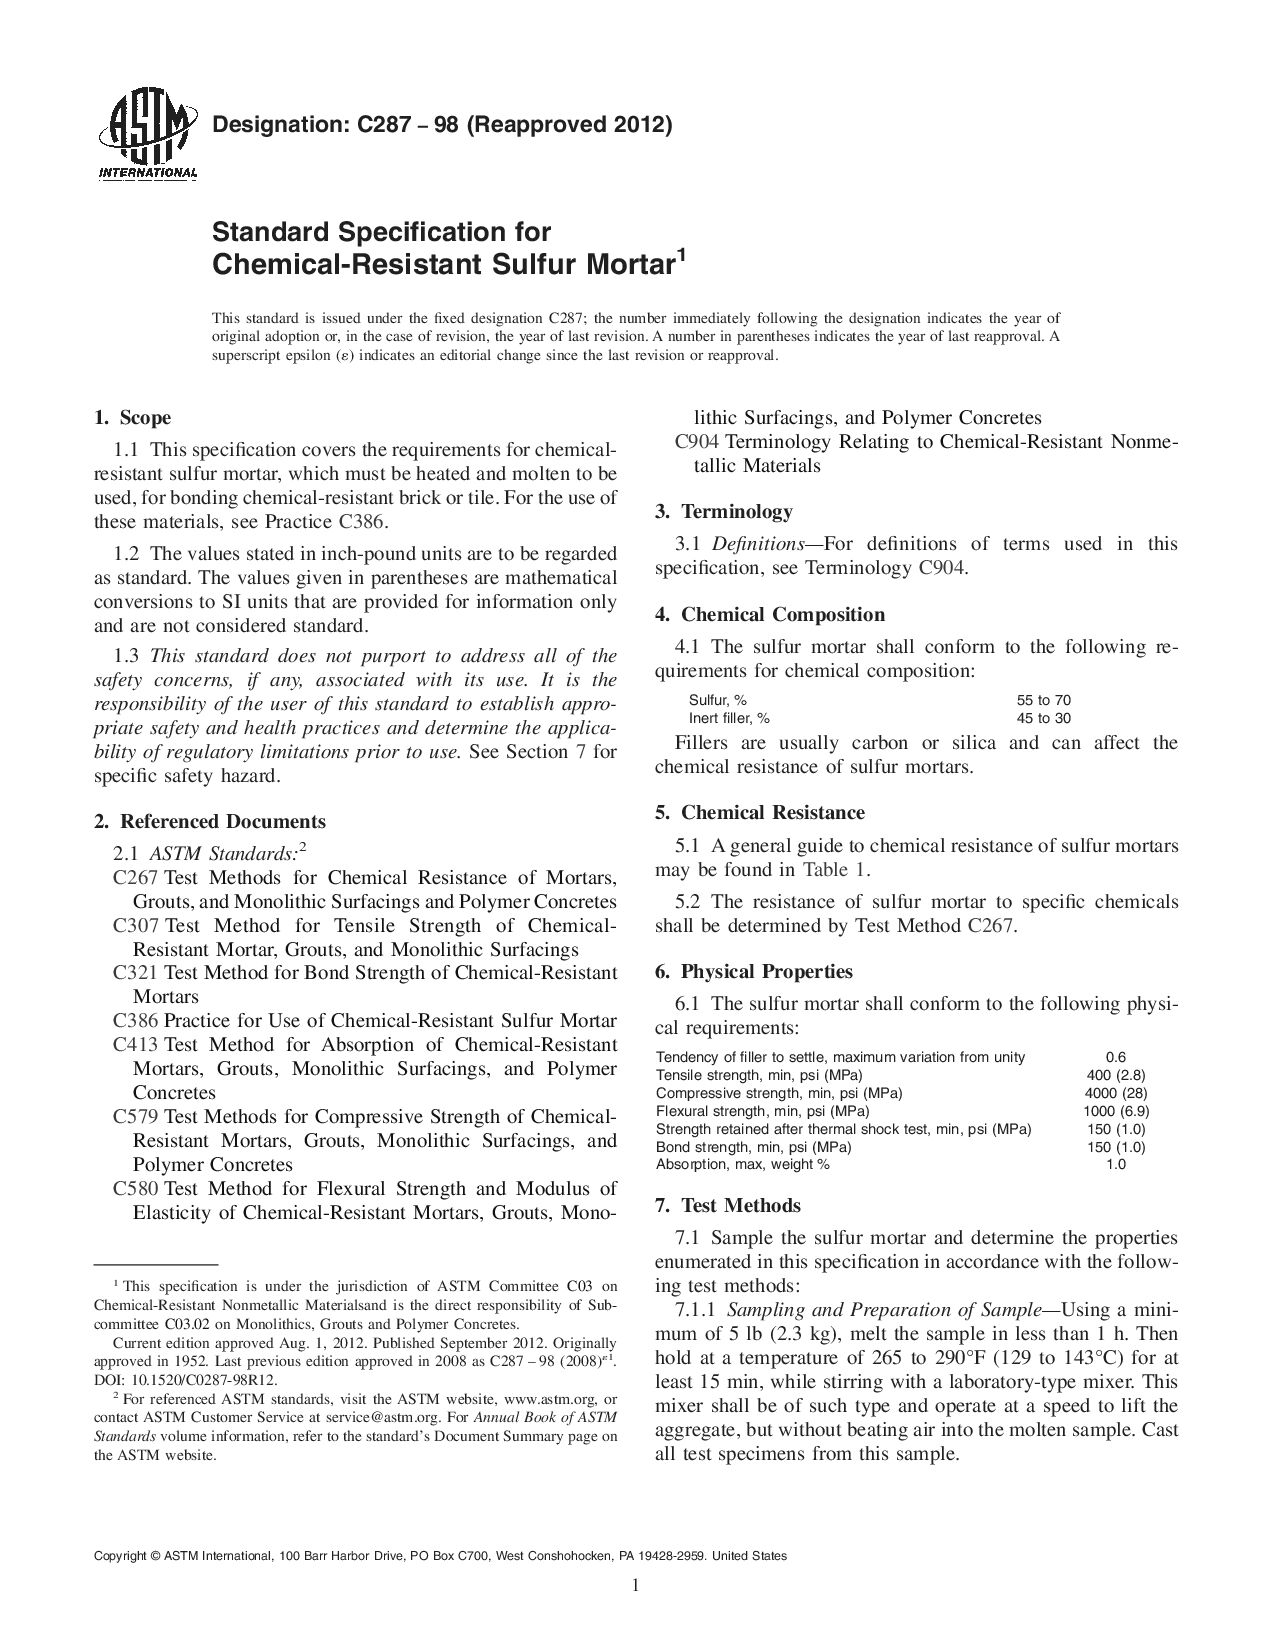 ASTM C287-98(2012)封面图